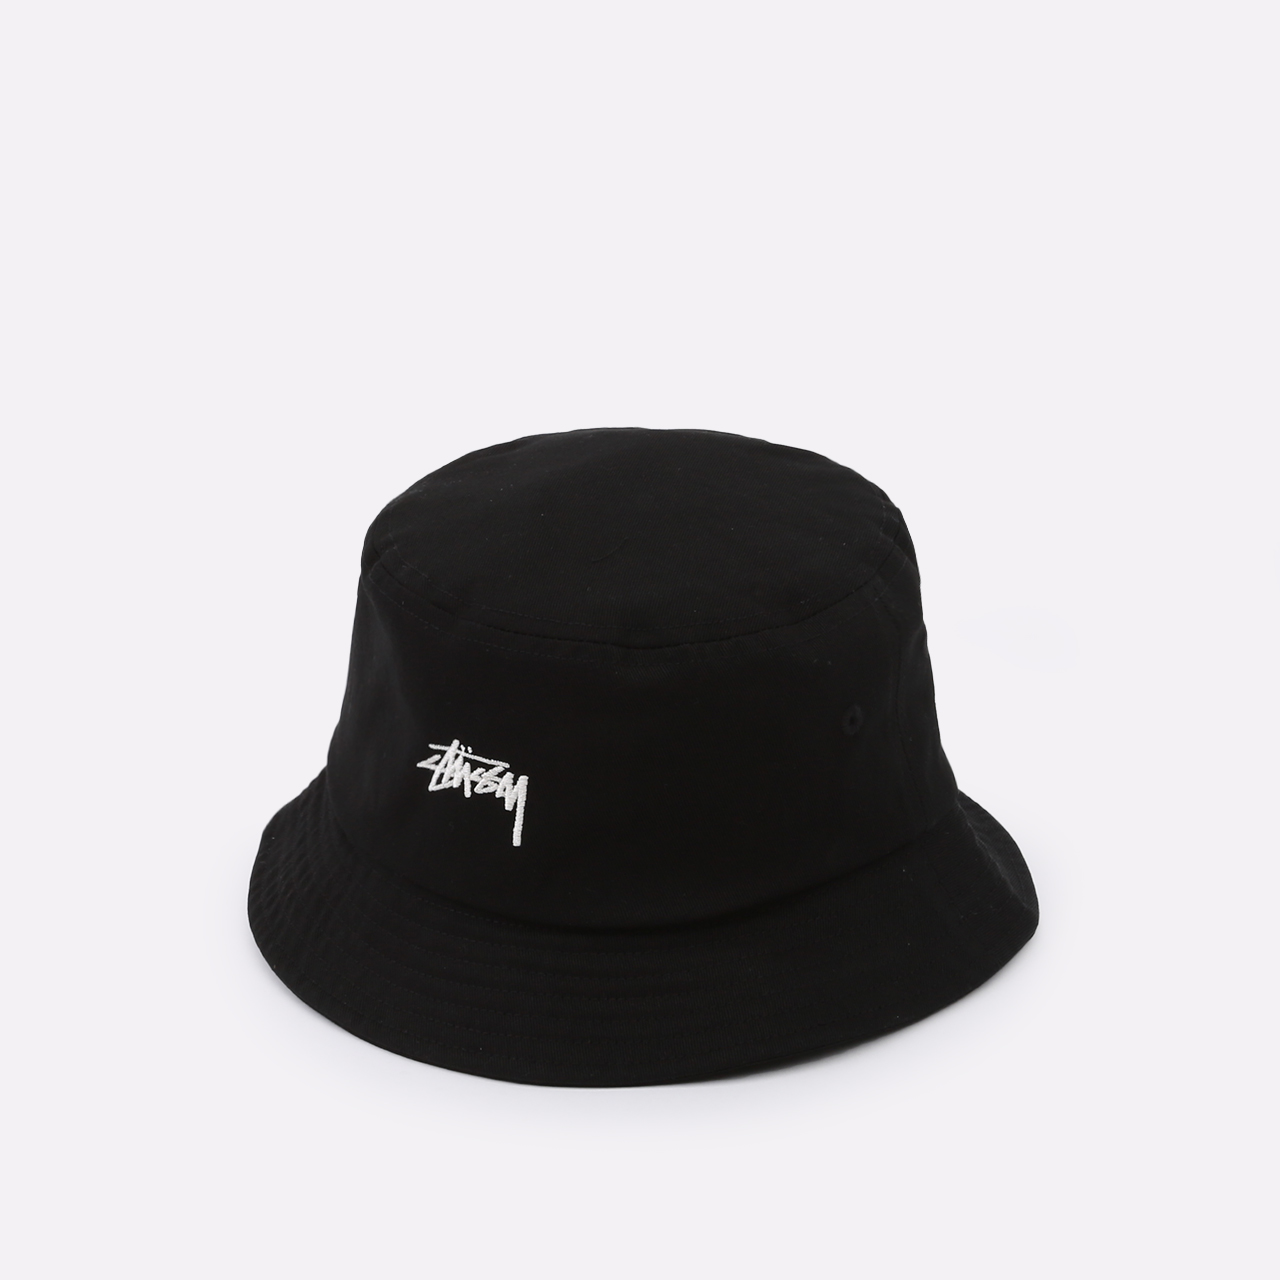  черная панама Stussy Bucket Hat 132974-black - цена, описание, фото 1